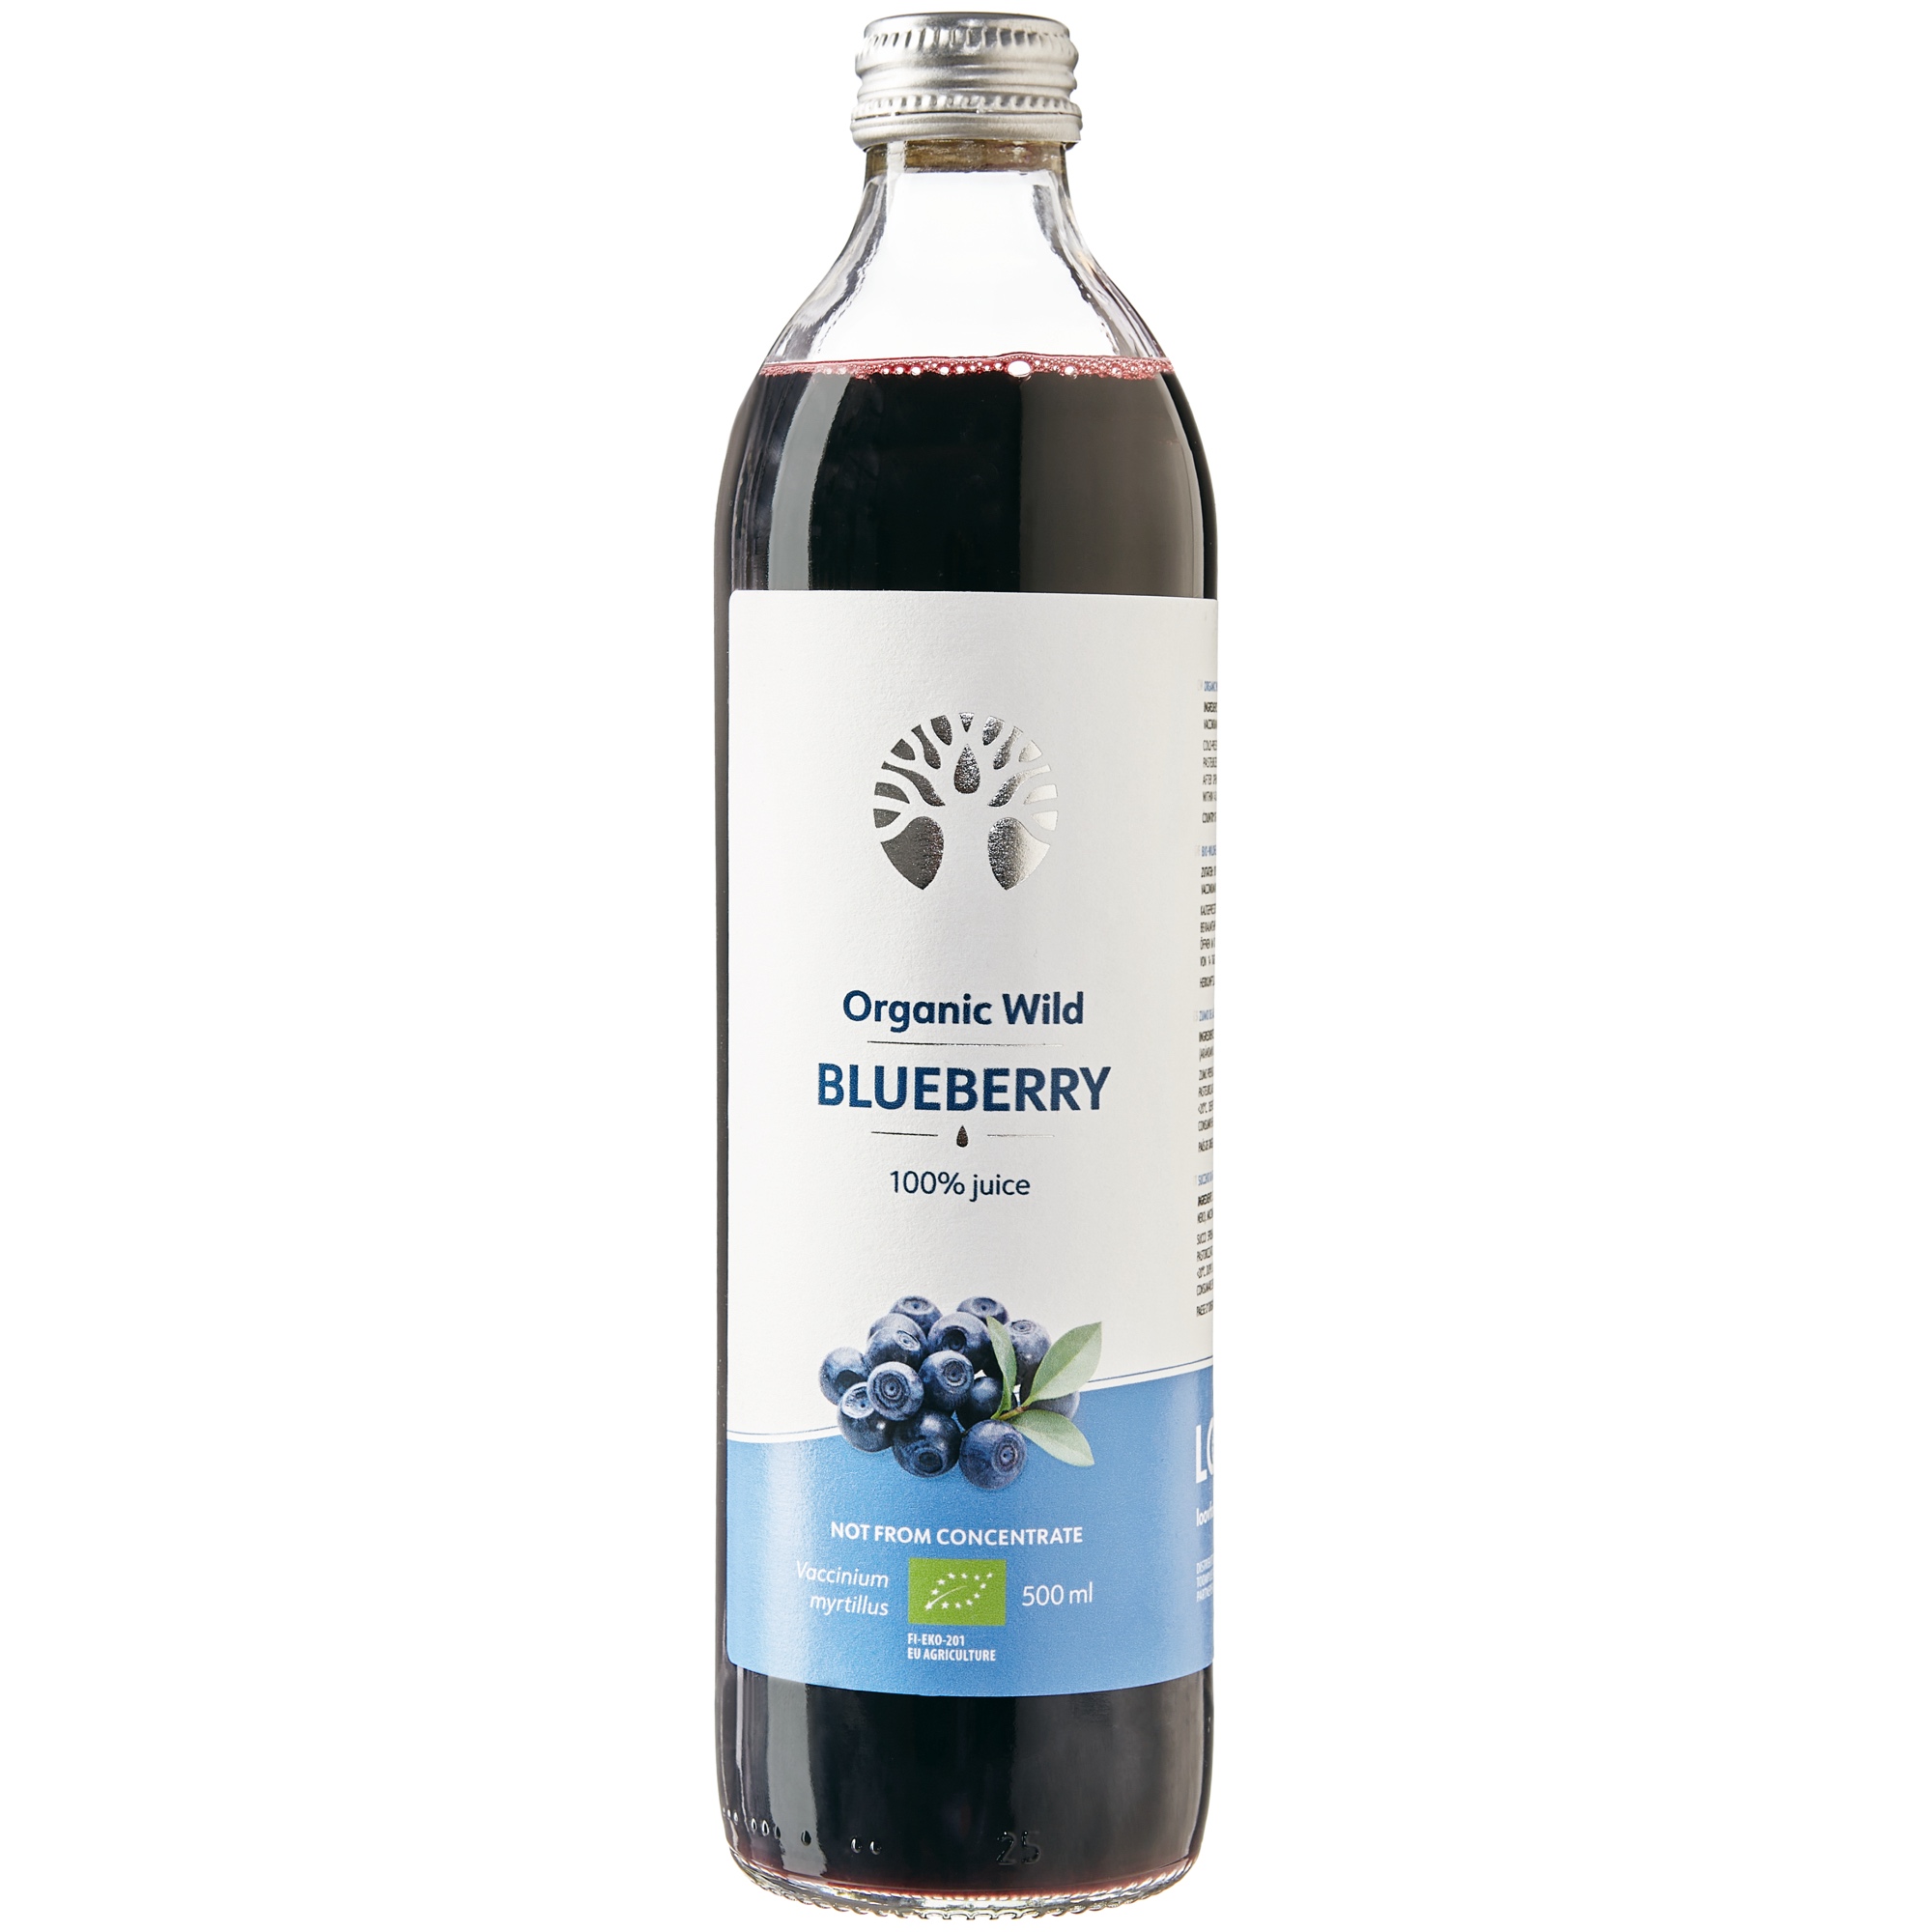 Wilde Blaubeere (Organic wild Blueberry) Saft